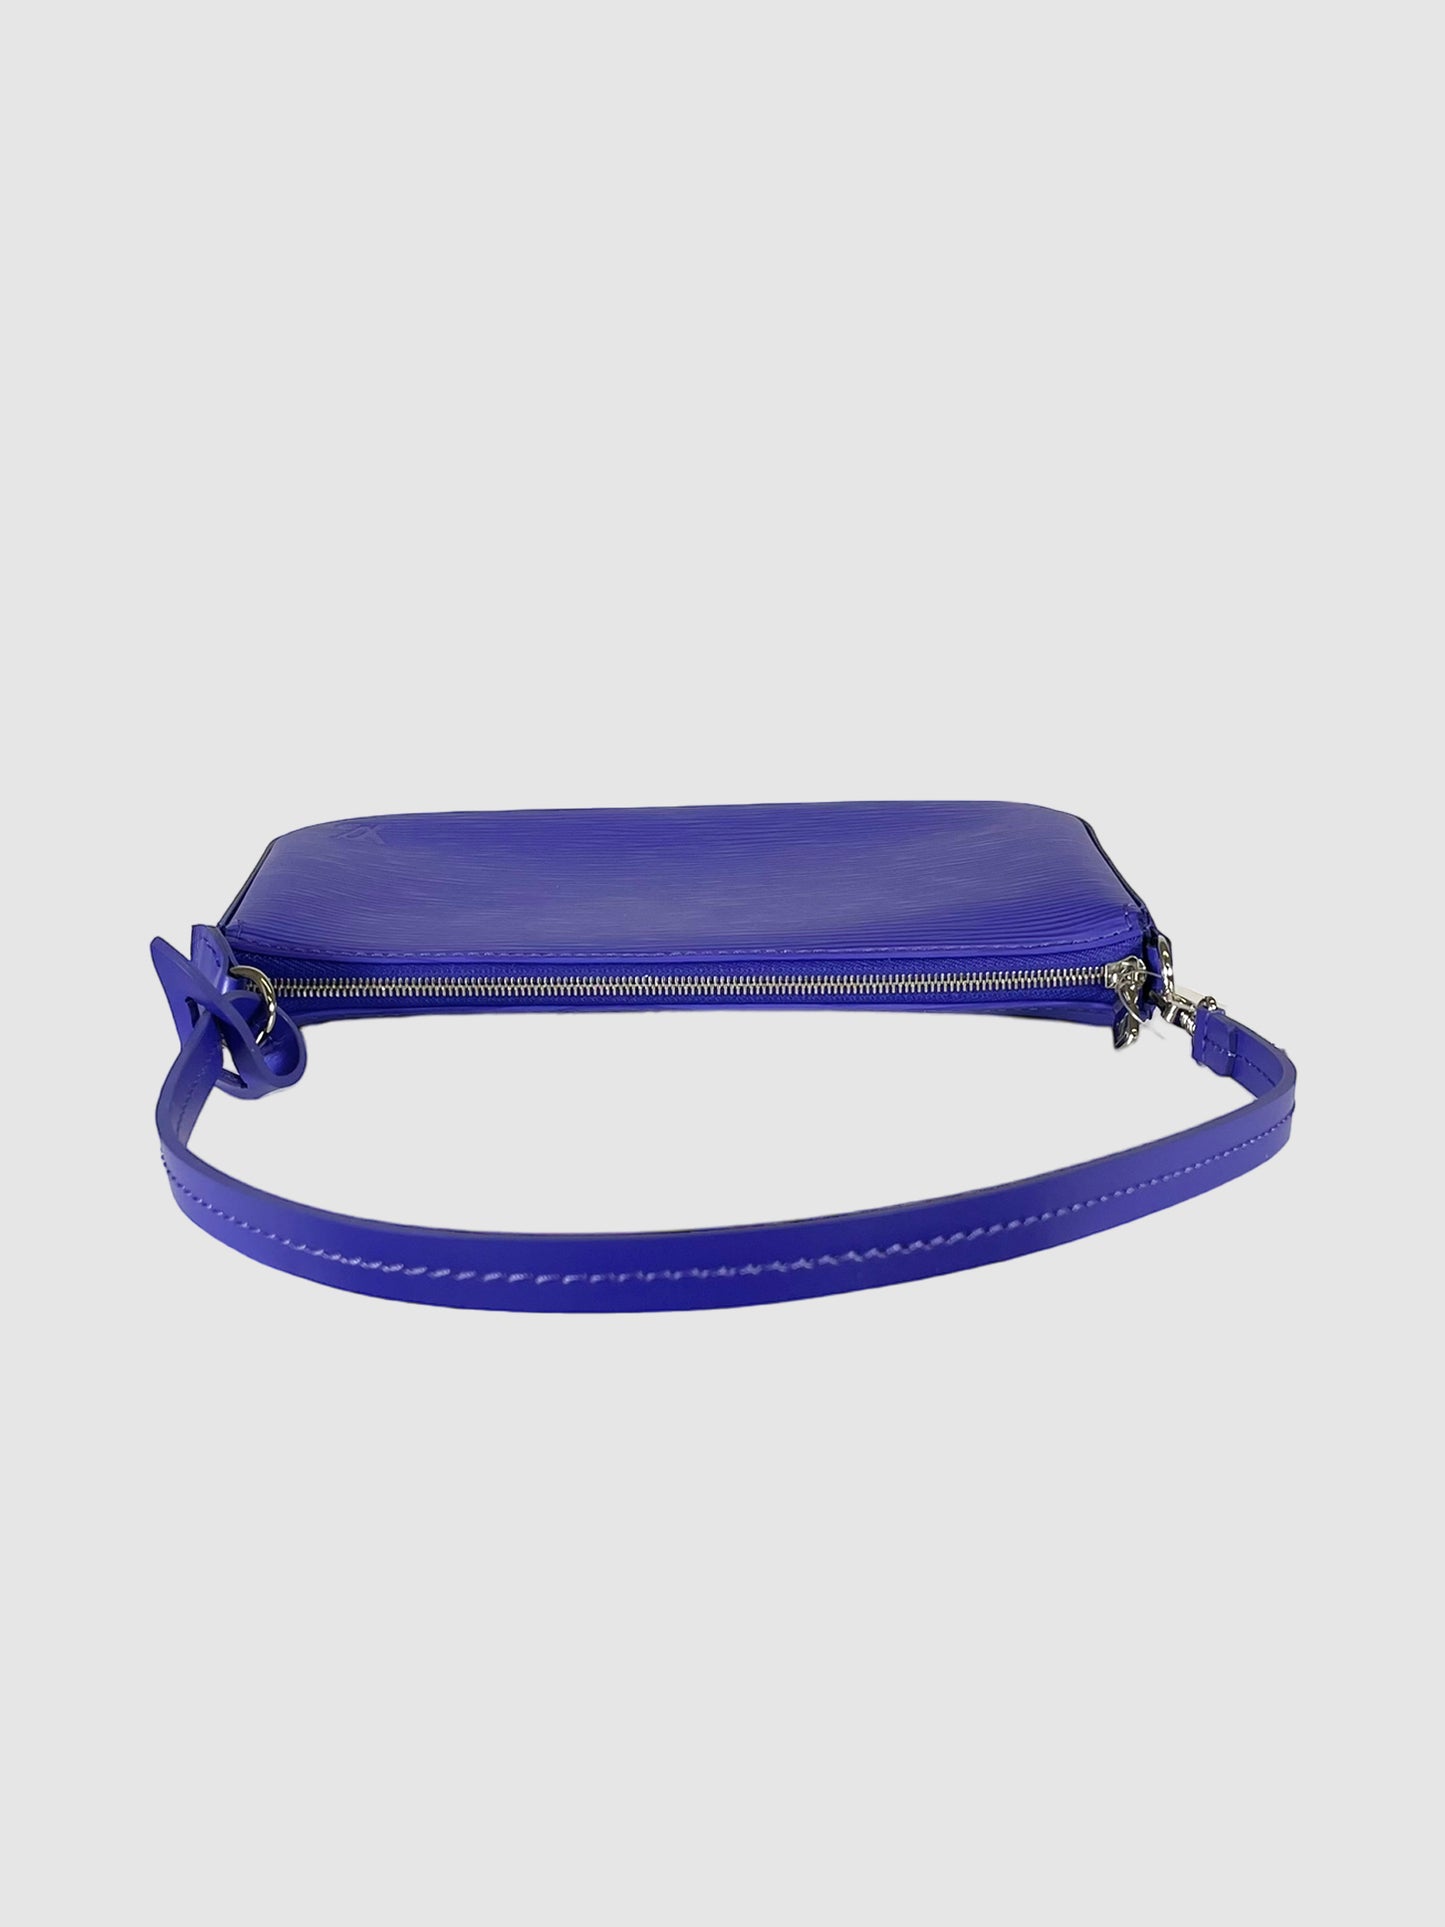 Louis Vuitton Pochette Accessoire Figue Epi Leather Handbag